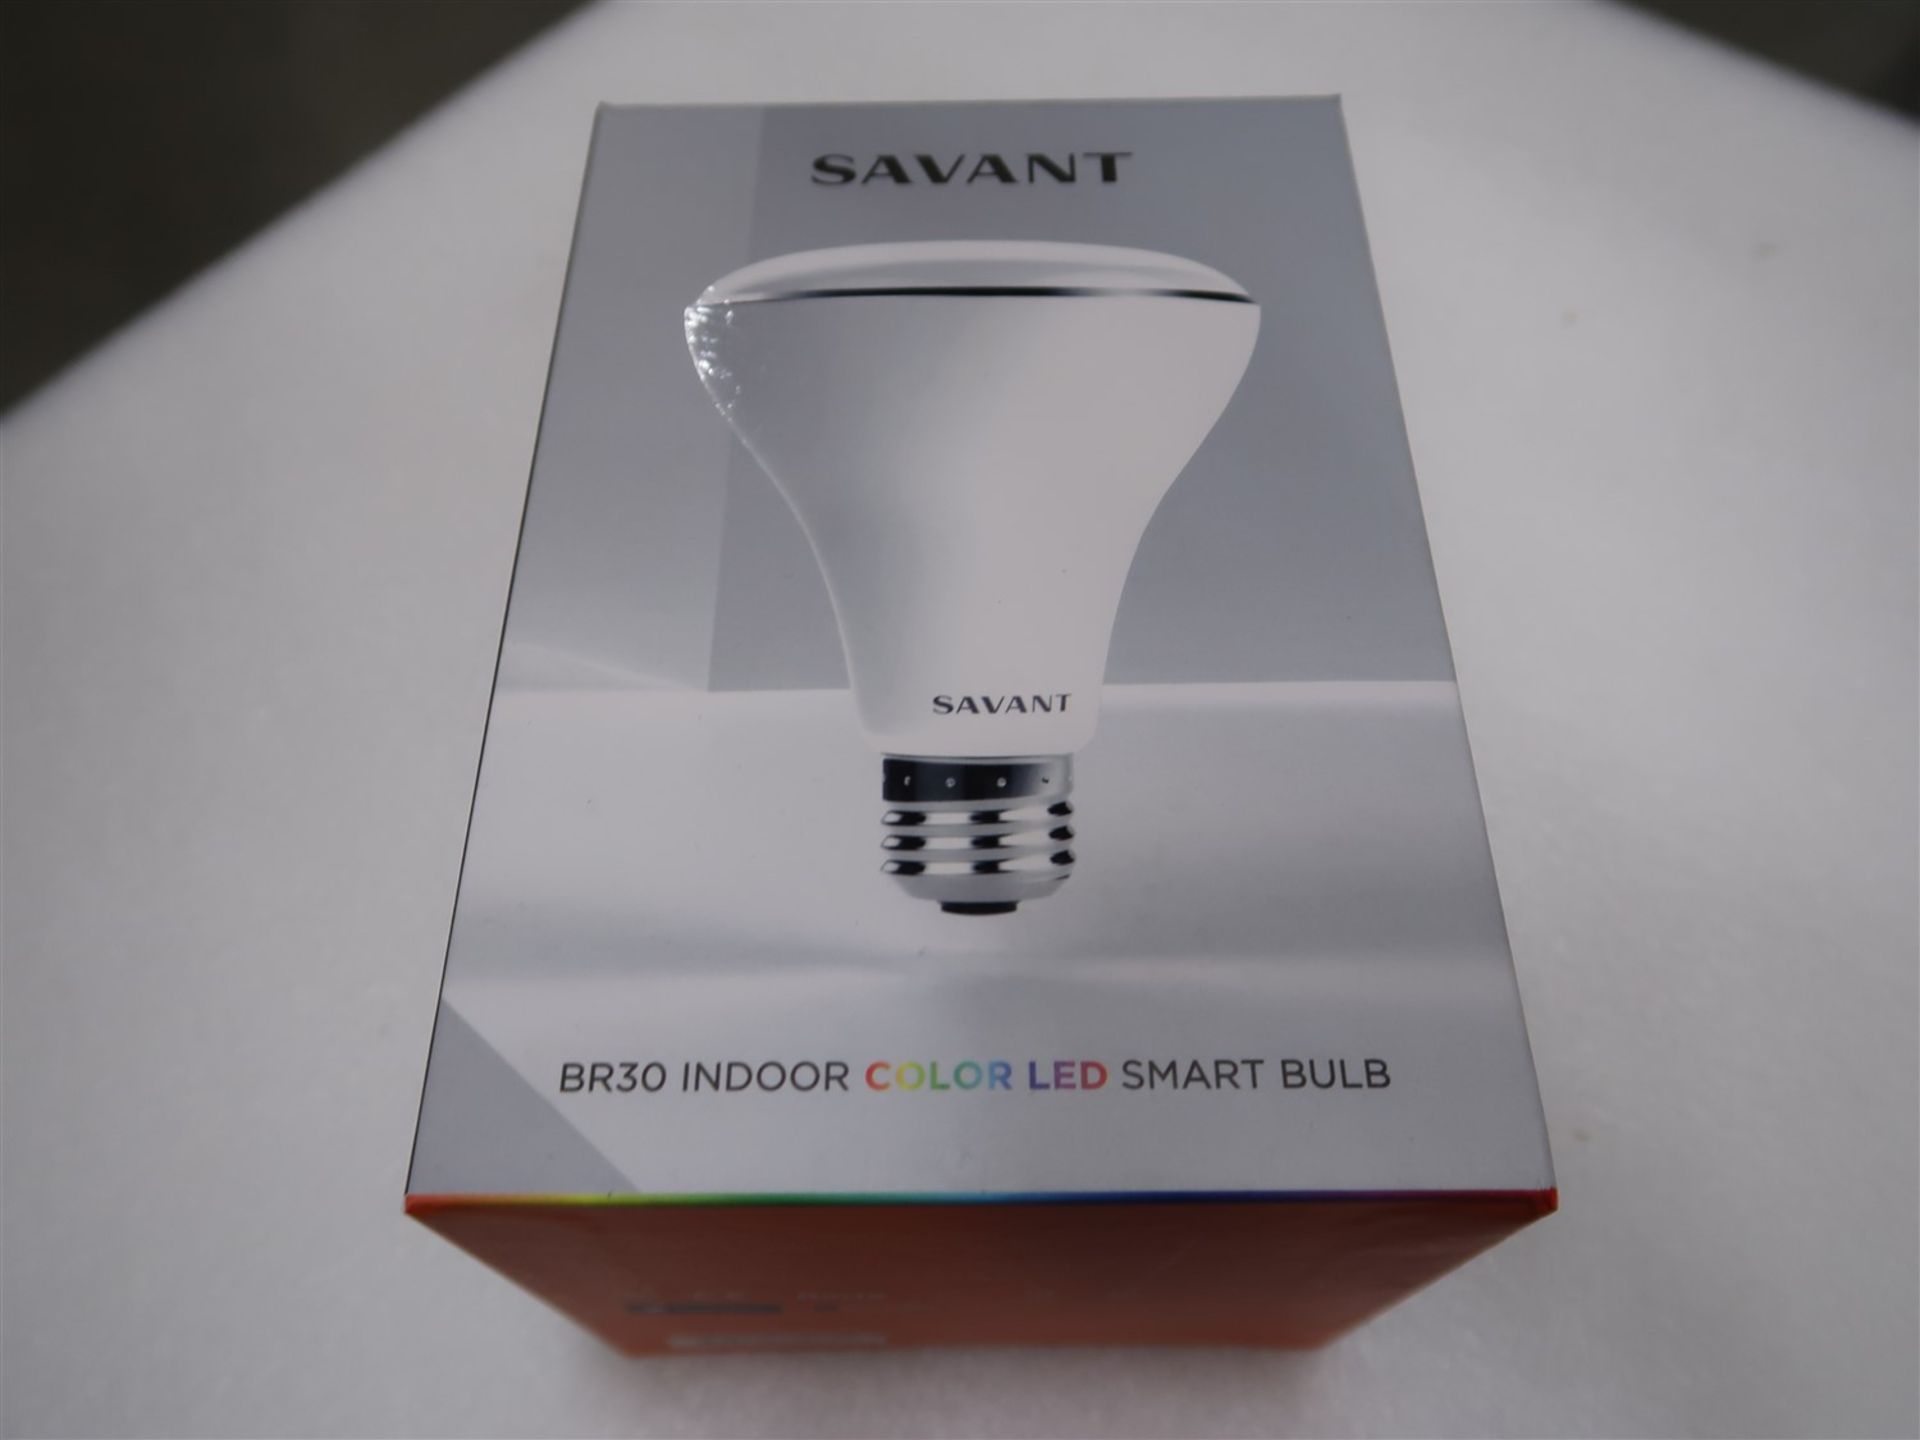 SAVANT BR30 INDOOR COLOR LED SMART BULB - Image 2 of 3